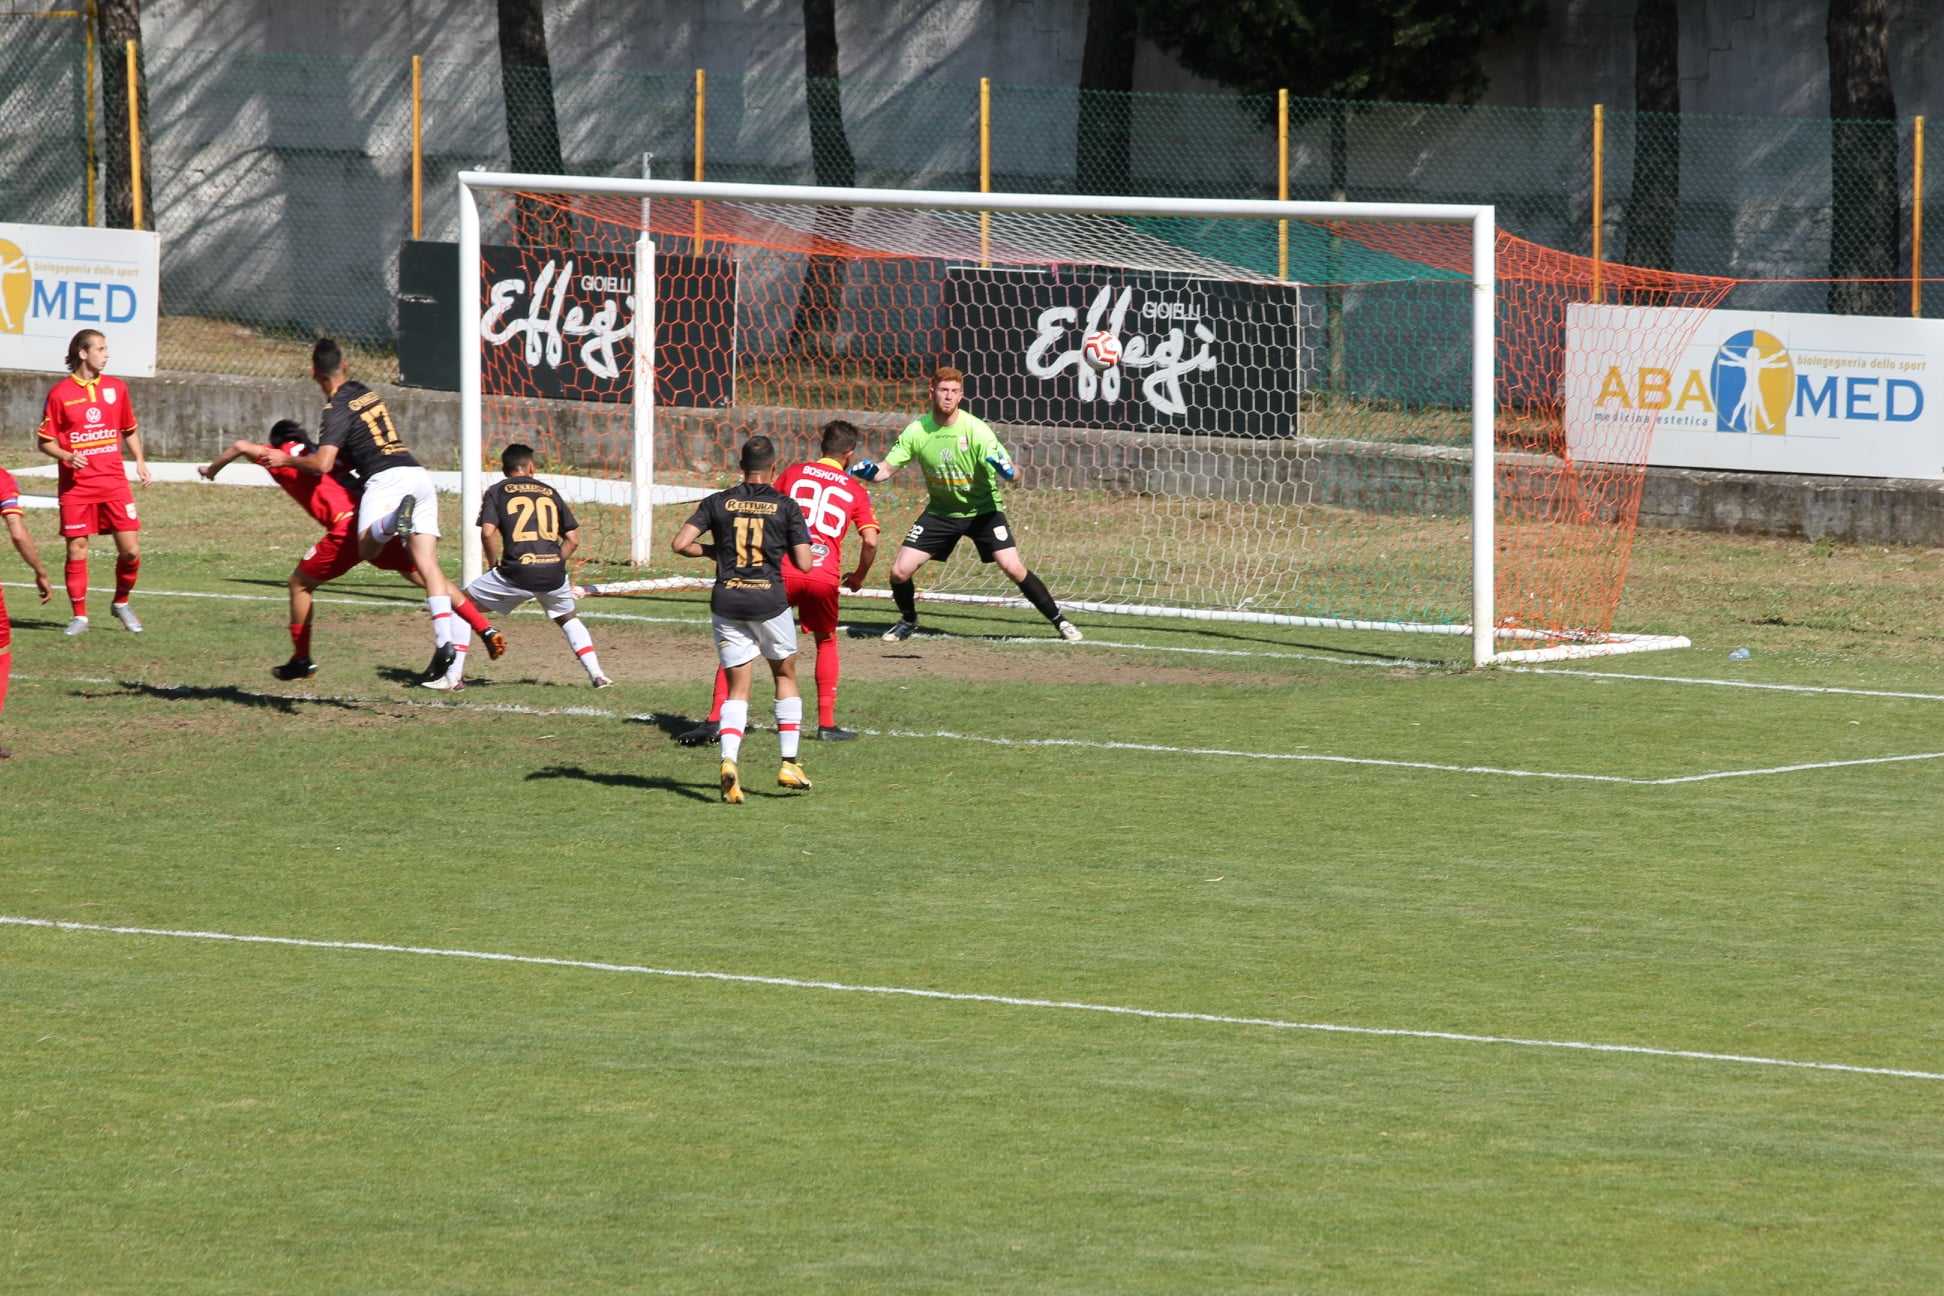 Il San Luca ferma la capolista Acr Messina (1-1), e continua la corsa verso i play off